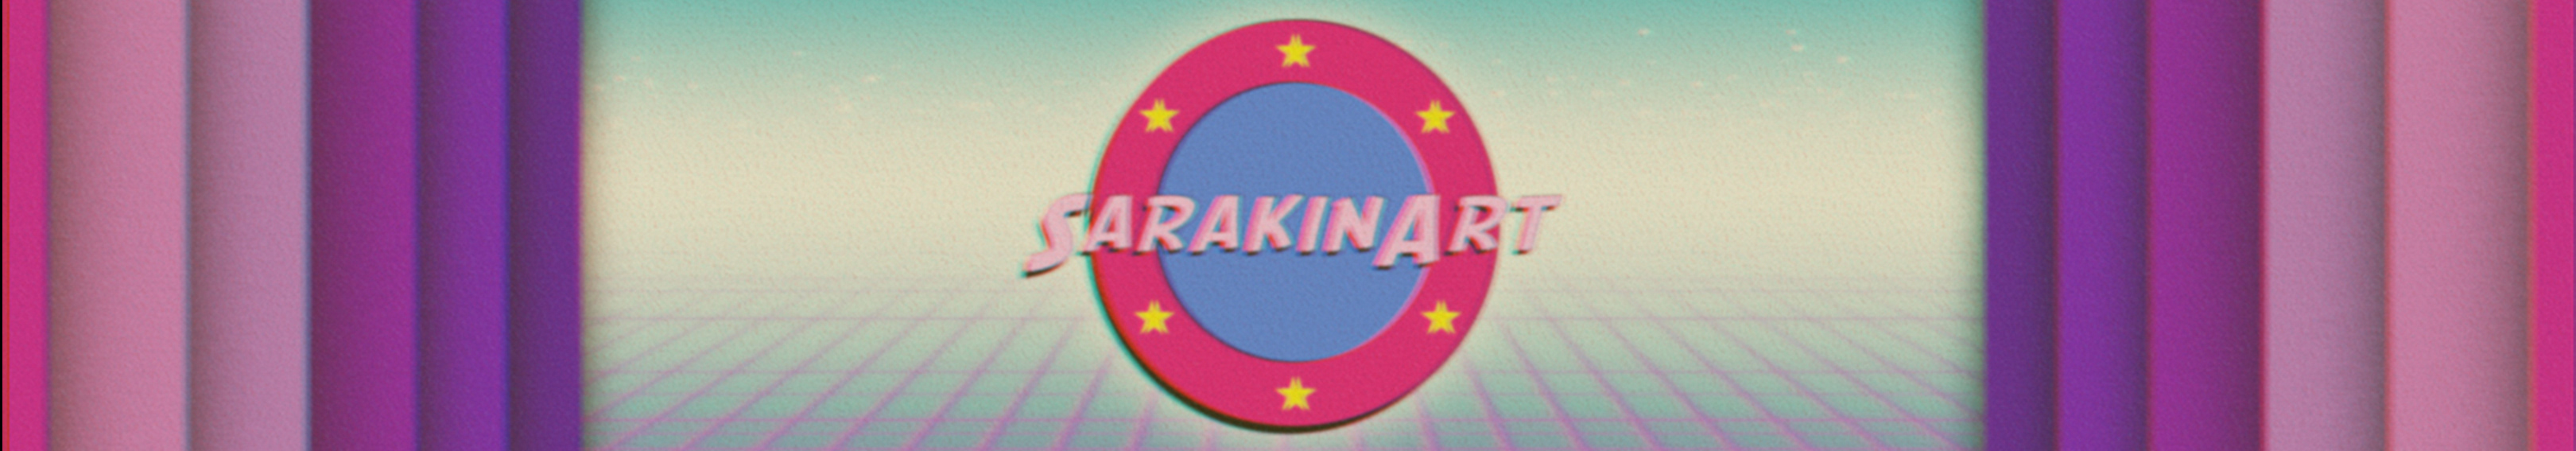 Sarakin Art's profile banner